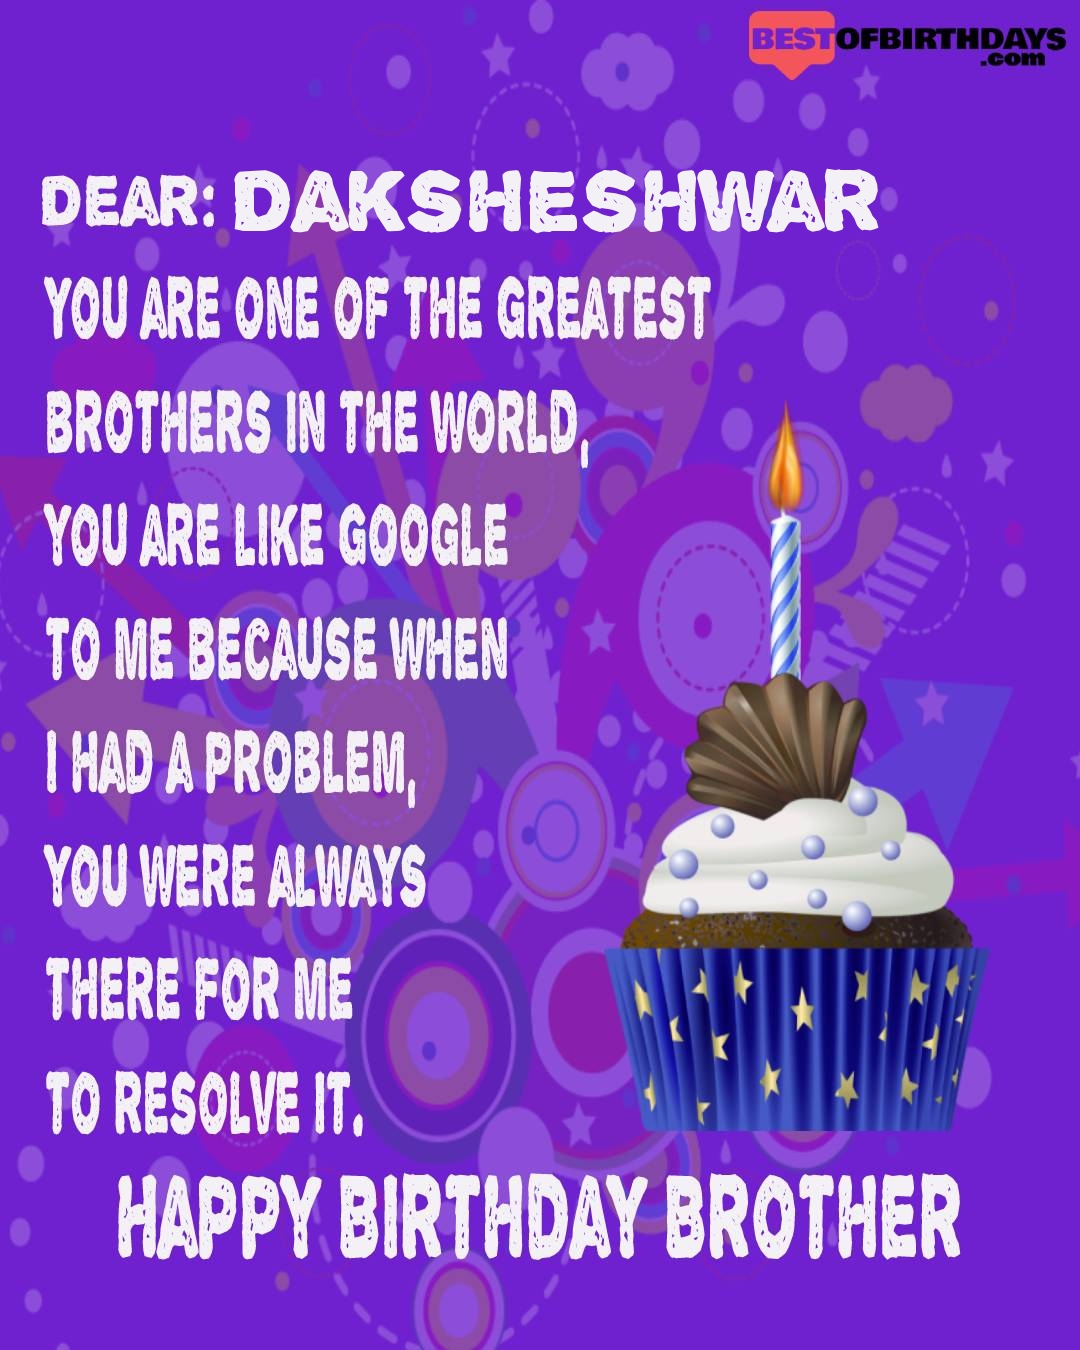 Happy birthday daksheshwar bhai brother bro